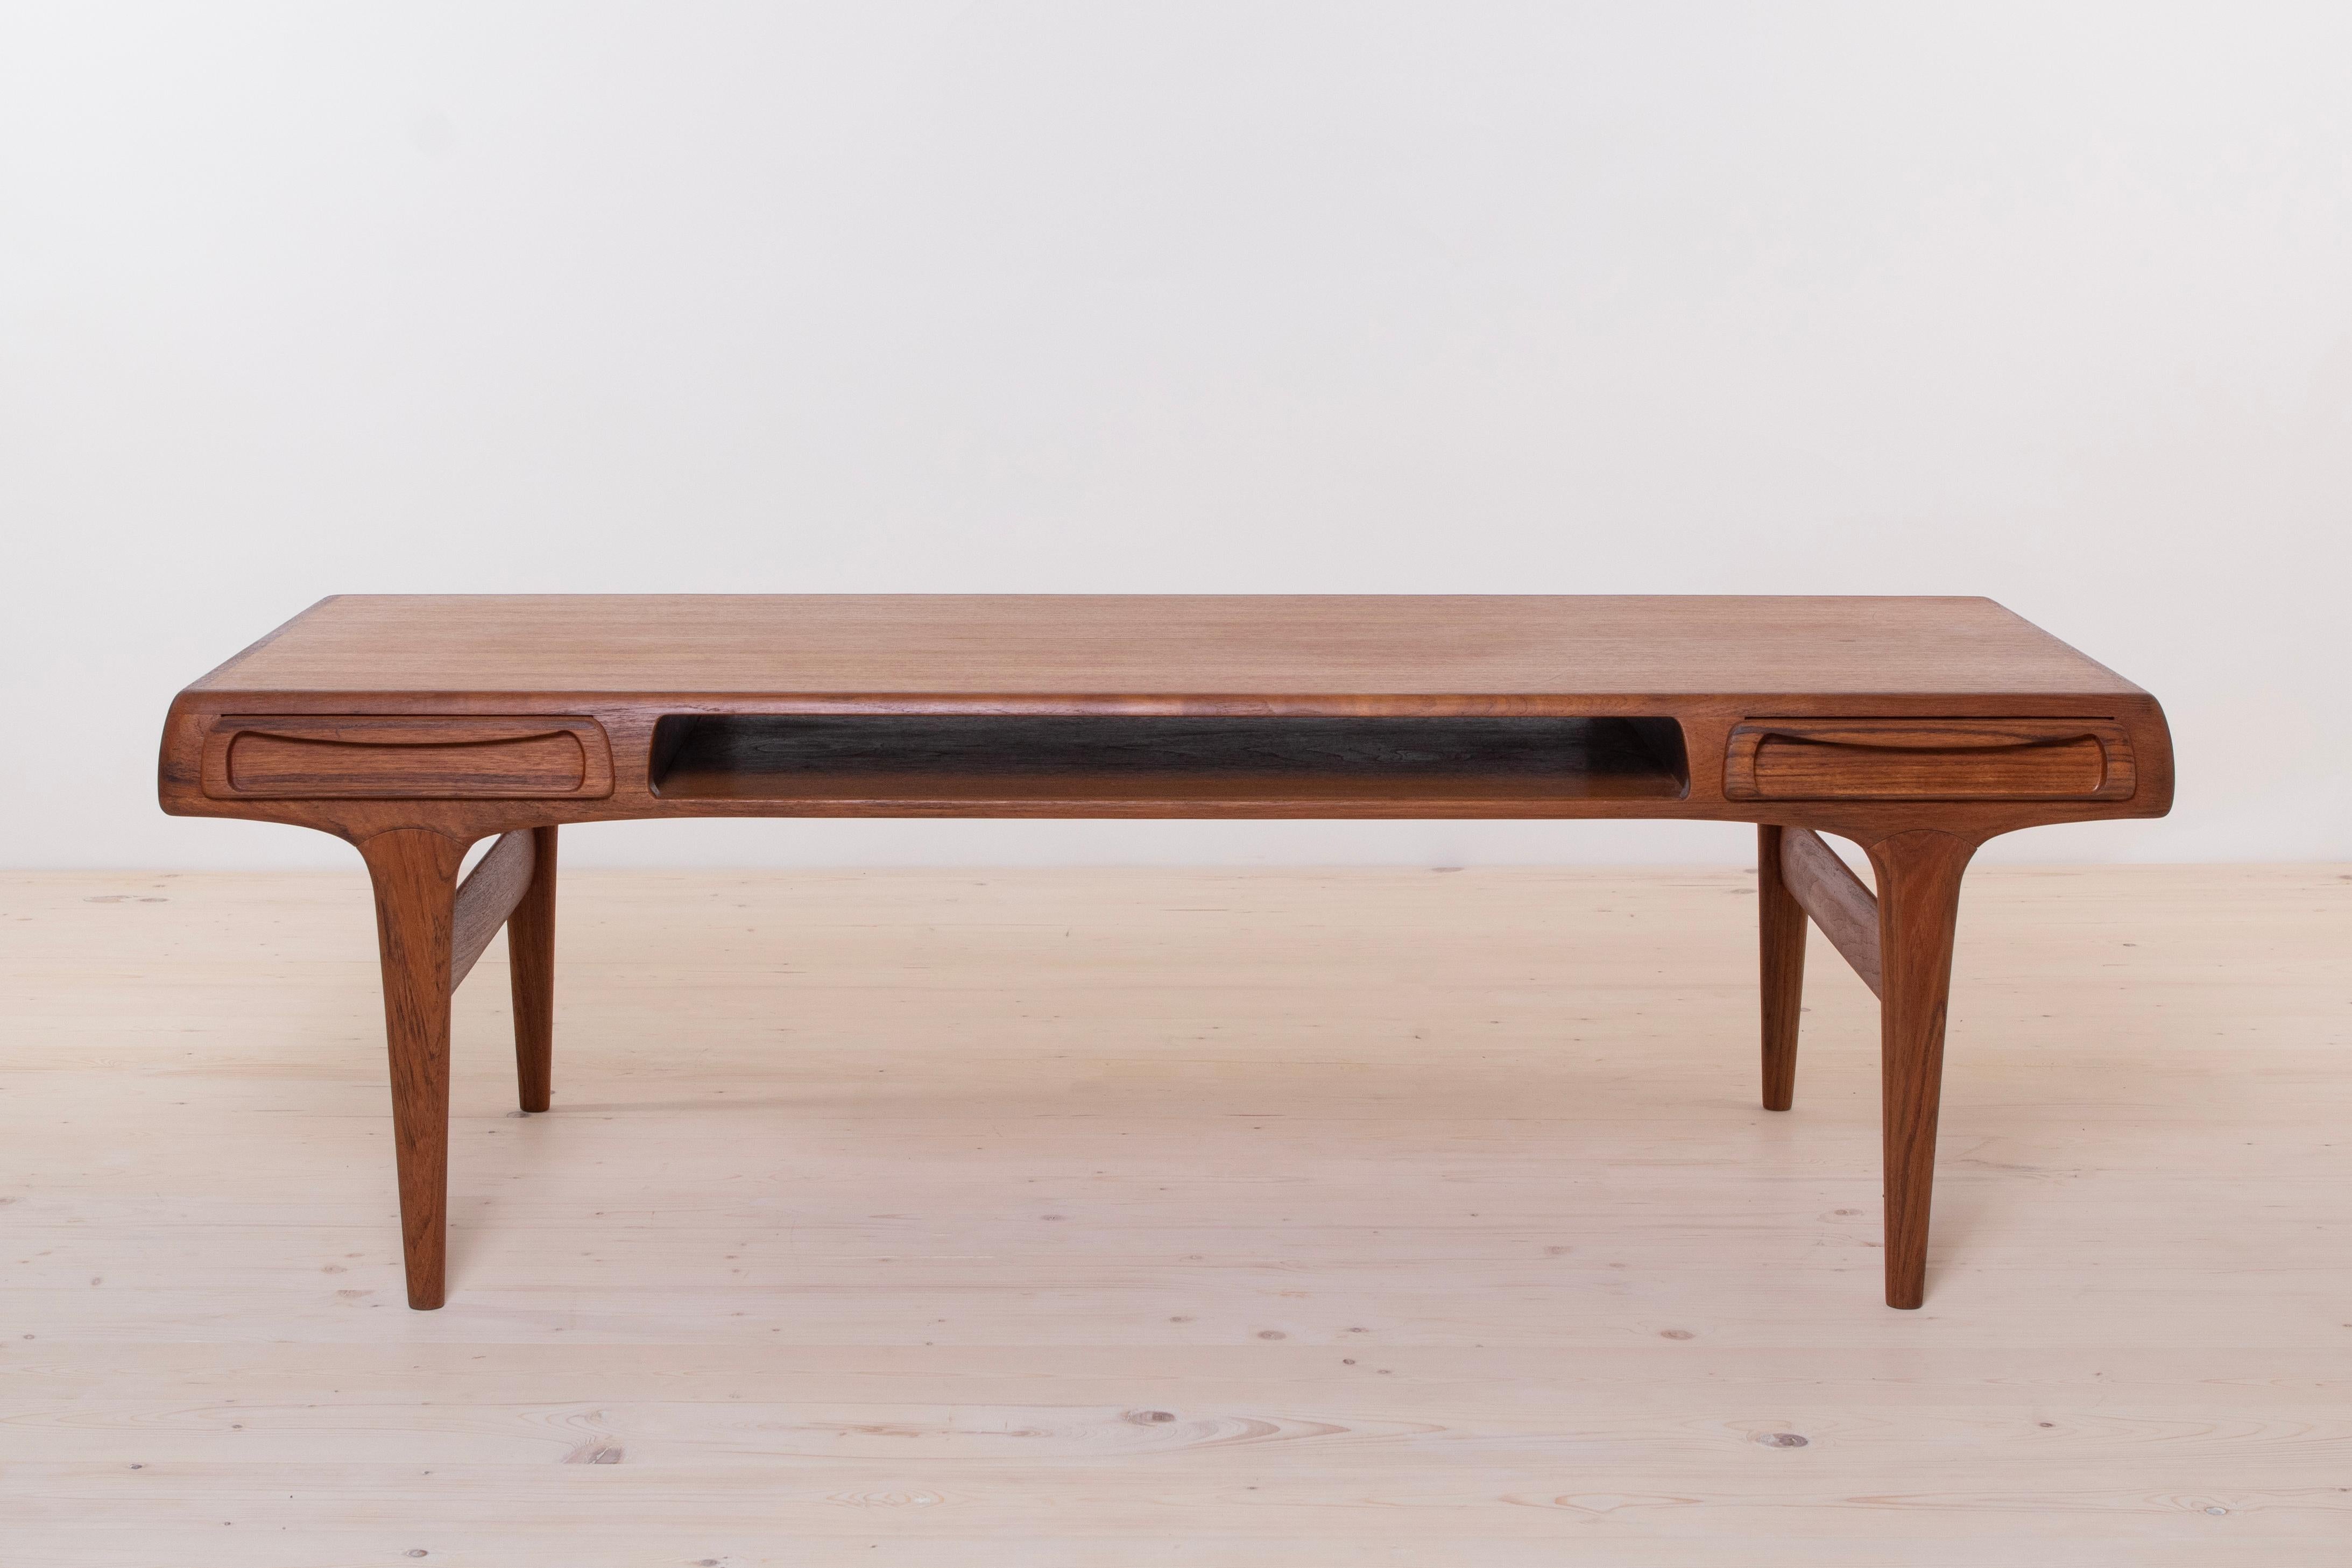 La table basse en teck Johannes Andresen, conçue et fabriquée dans les années 1960, est l'incarnation même de l'élégance et de l'artisanat. Élevez votre espace de vie avec cette pièce intemporelle qui allie harmonieusement le design scandinave et la